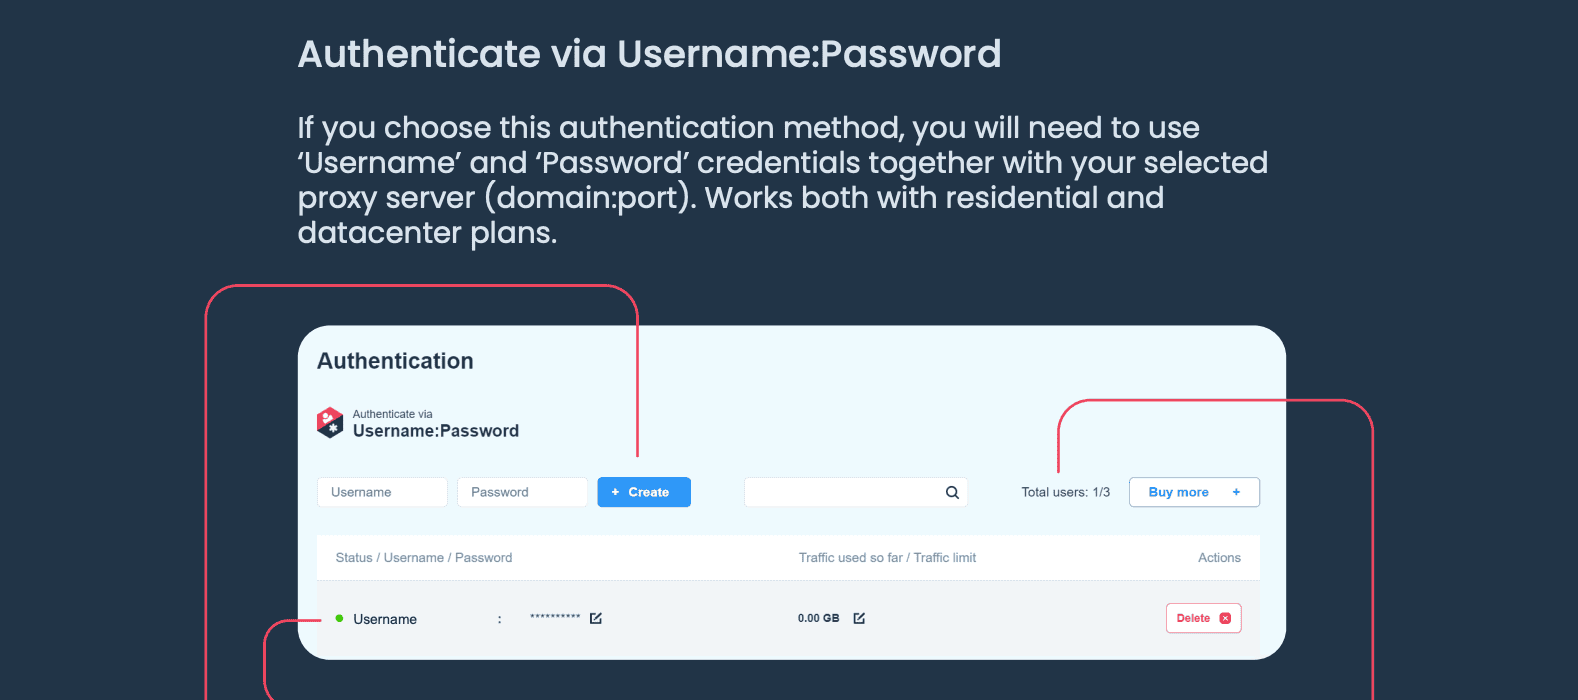 Usernam:password authentication method. 